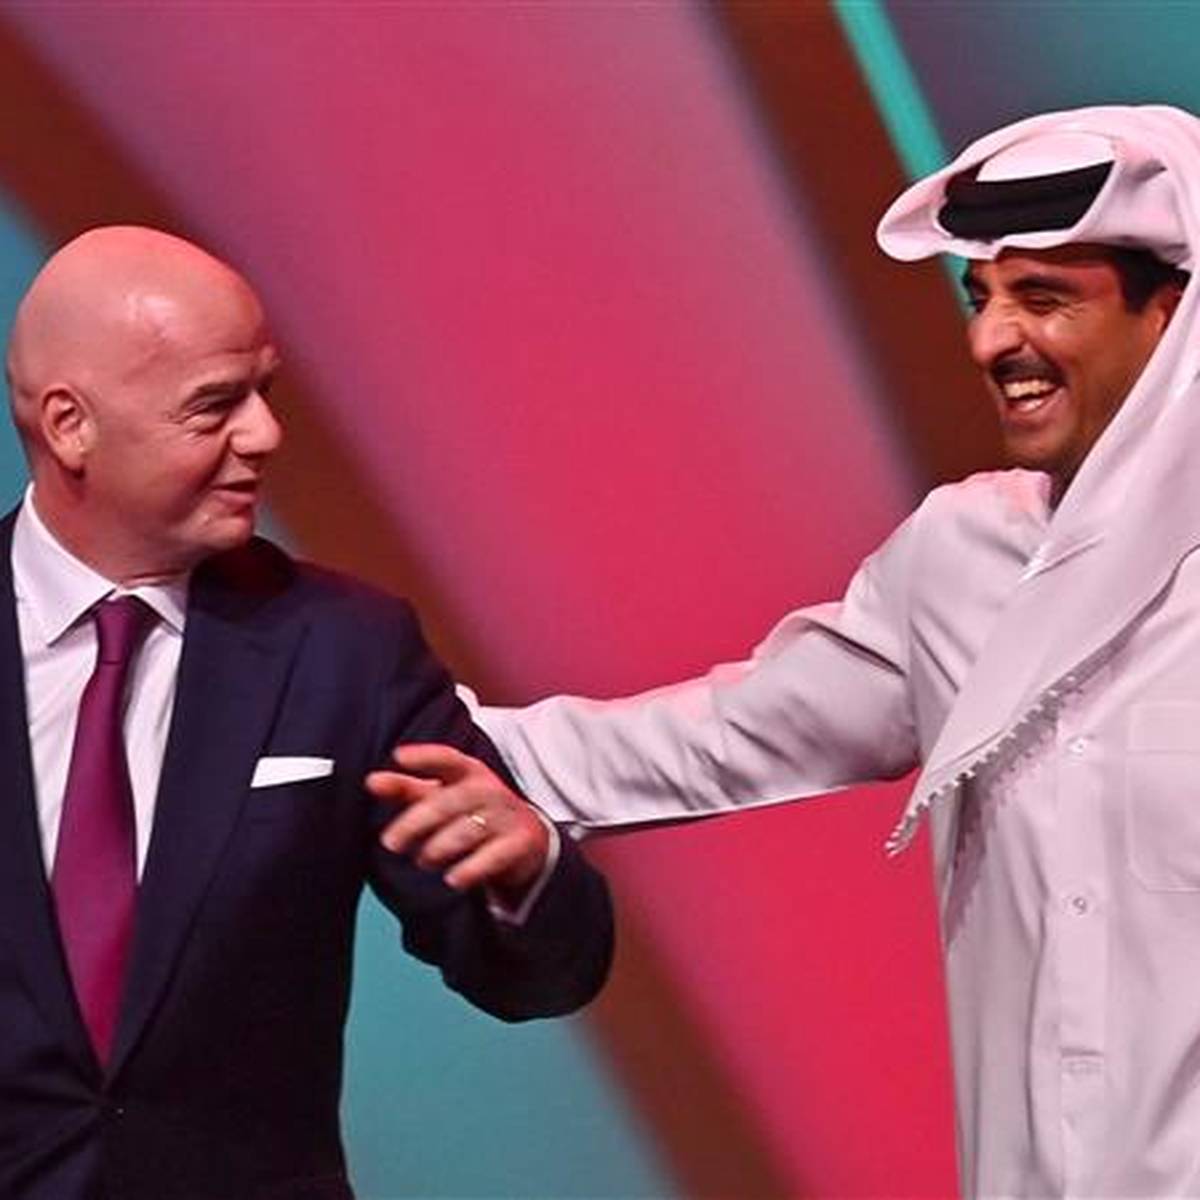 Planänderung der WM in Katar: "Das nervt mich!"